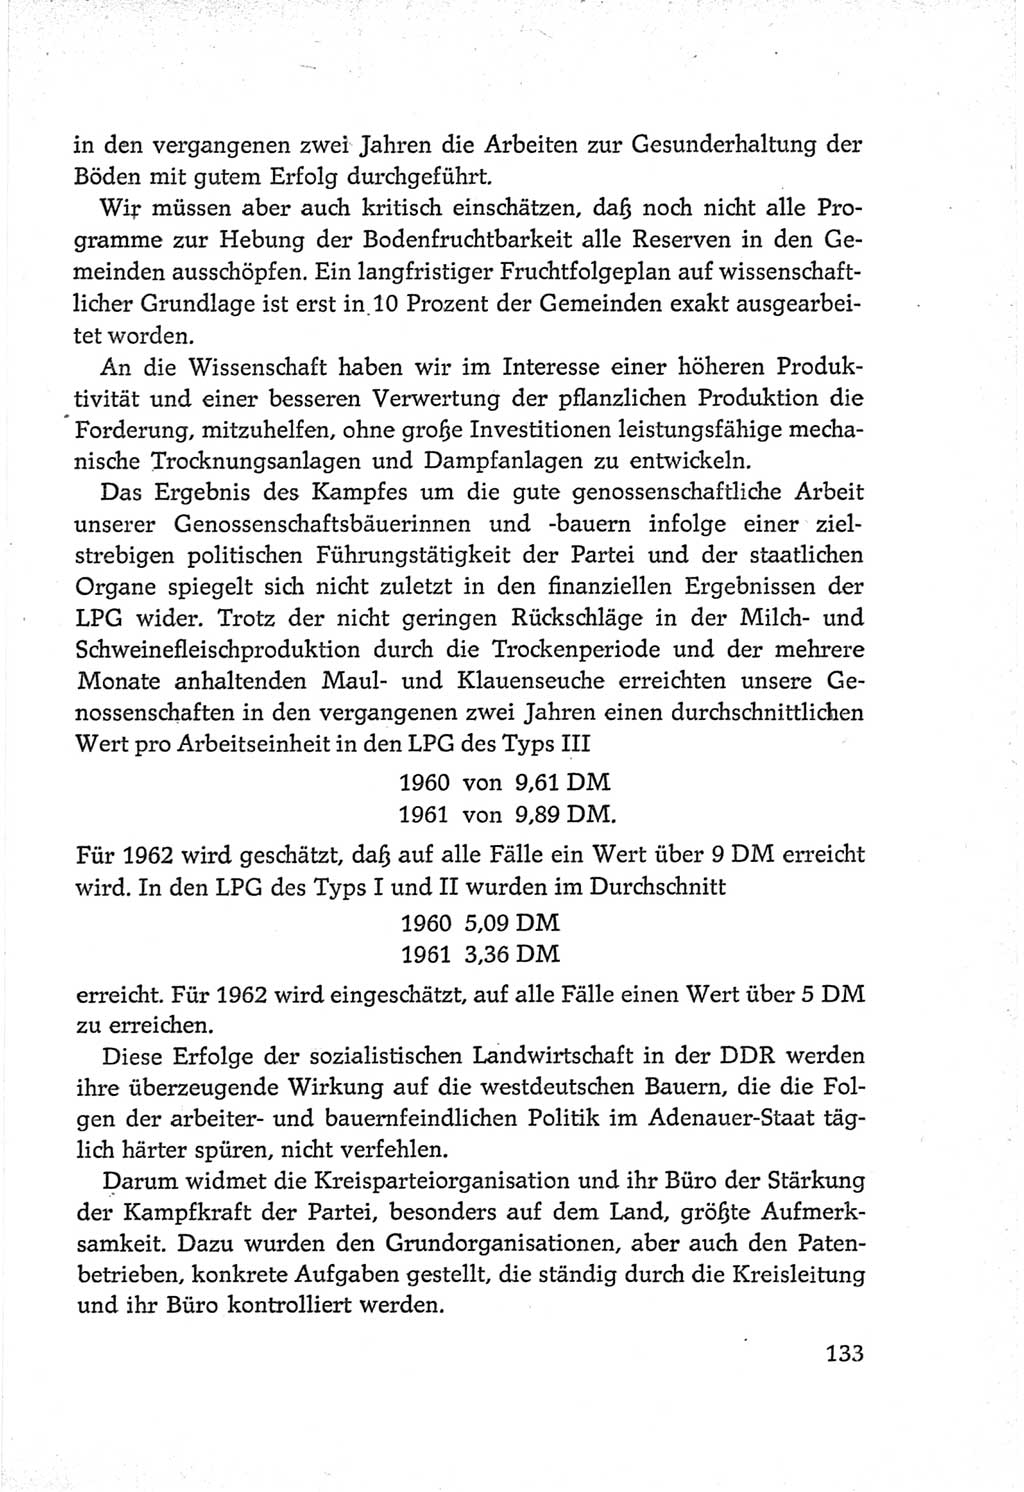 Protokoll der Verhandlungen des Ⅵ. Parteitages der Sozialistischen Einheitspartei Deutschlands (SED) [Deutsche Demokratische Republik (DDR)] 1963, Band Ⅲ, Seite 133 (Prot. Verh. Ⅵ. PT SED DDR 1963, Bd. Ⅲ, S. 133)